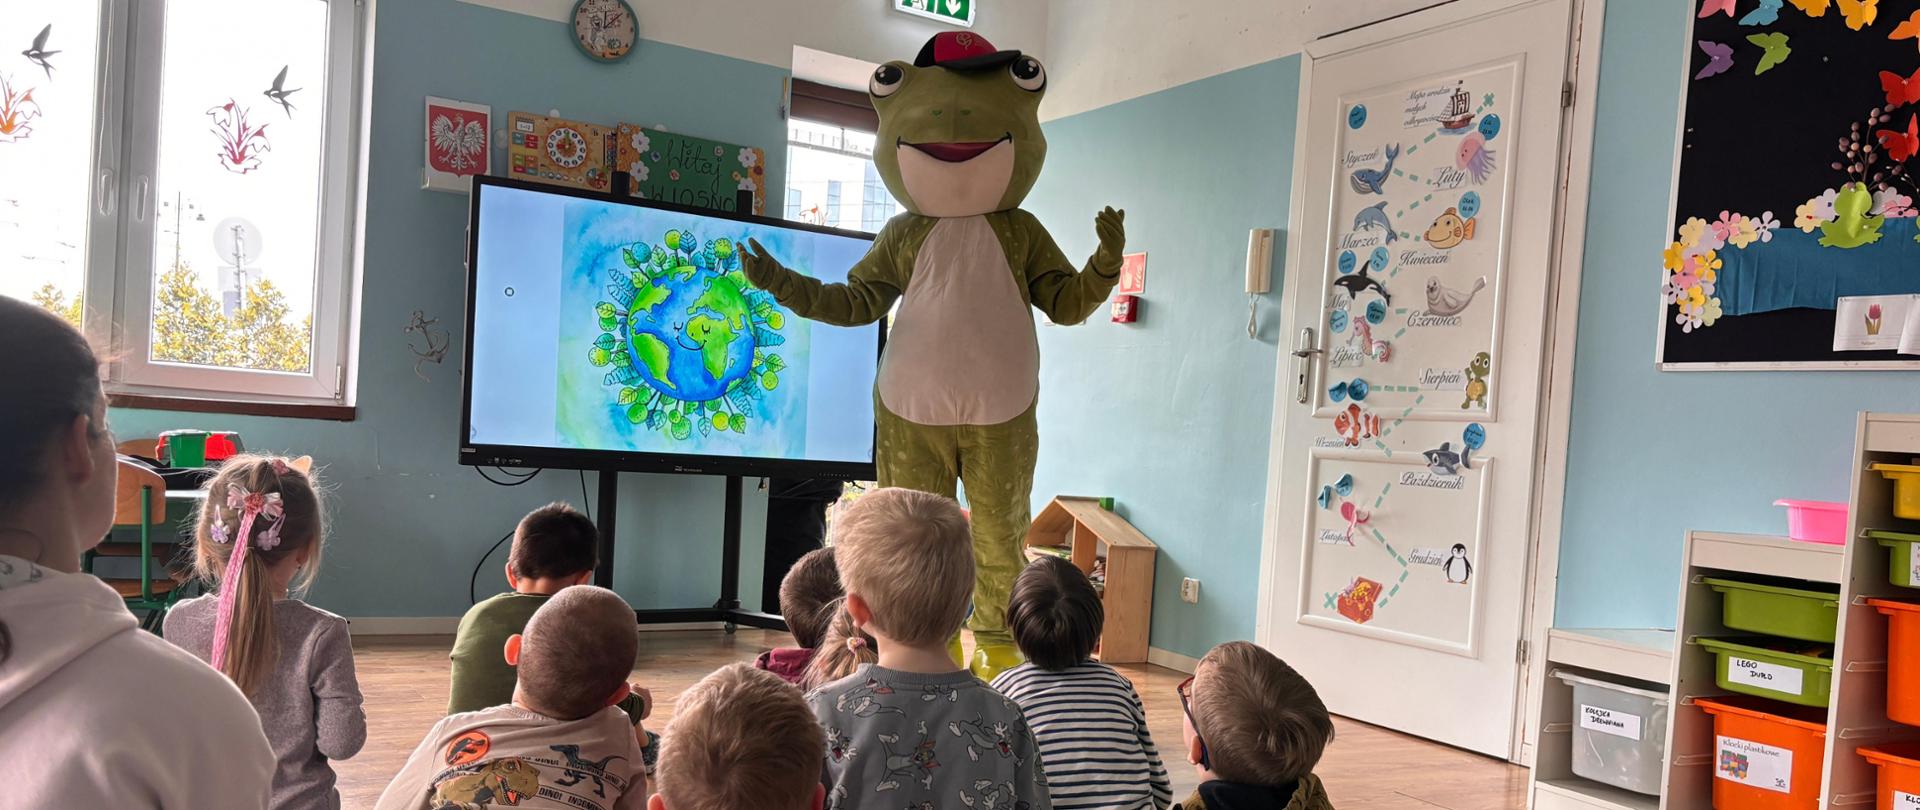 Żywa maskotka Żabka, stoi obok monitora z wyświetloną grafiką Dnia Ziemi, przed nią siedzą na macie dzieci i słuchają.